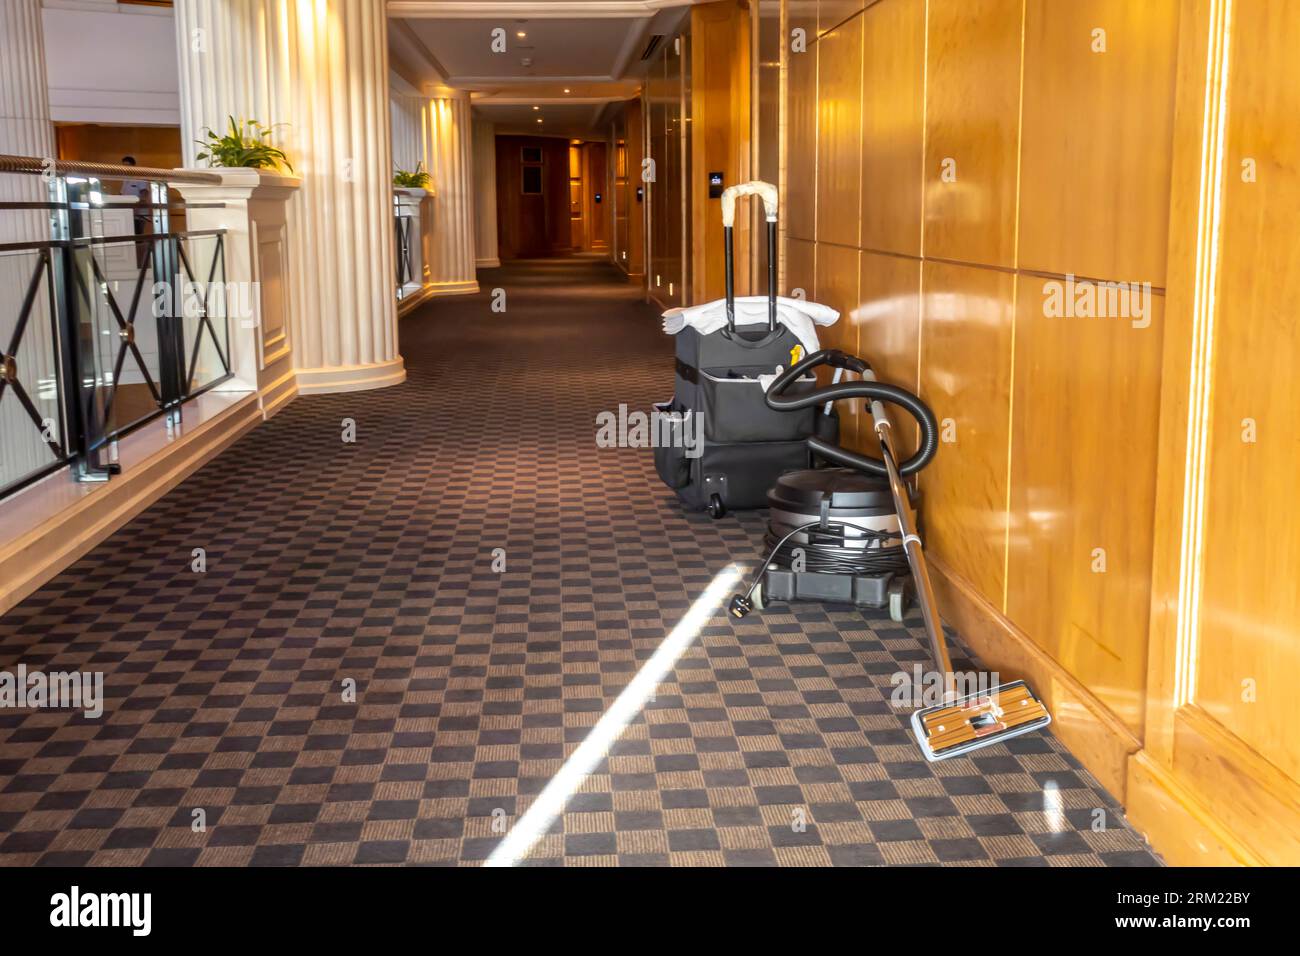 Chariot de la femme de ménage poste d'aspirateur dans un couloir d'hôtel. Nettoyeur de femme de ménage pour le nettoyage des tapis. Hôtel Ritz-Carlton Bahrain Banque D'Images